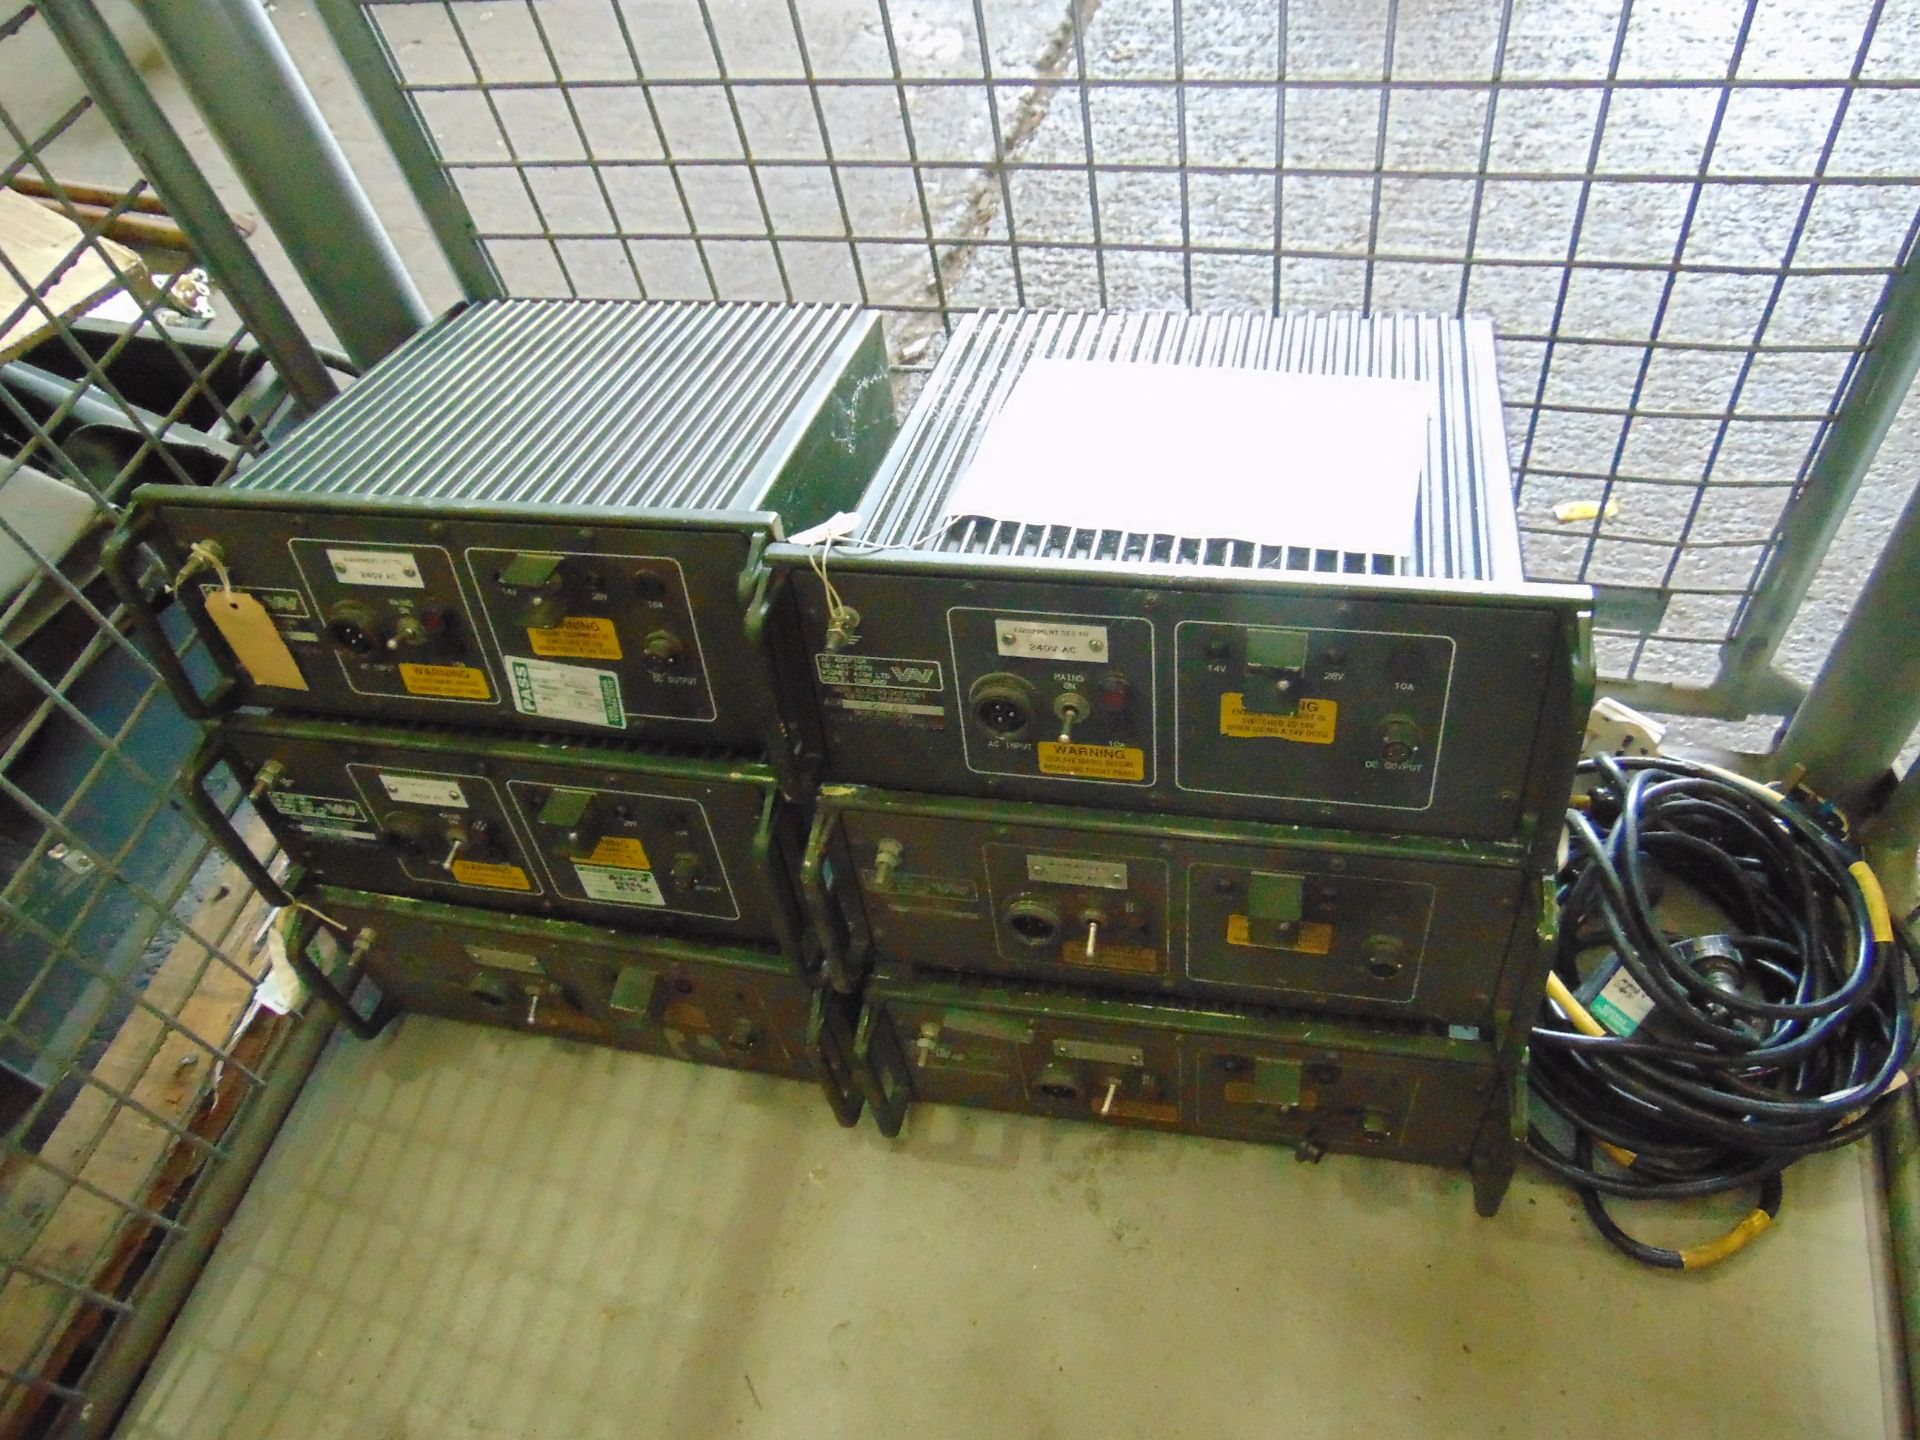 6 x Clansman 240 Volt AC Adapter power units 14 Volt / 28 Volt Complete with power leads etc - Bild 4 aus 4